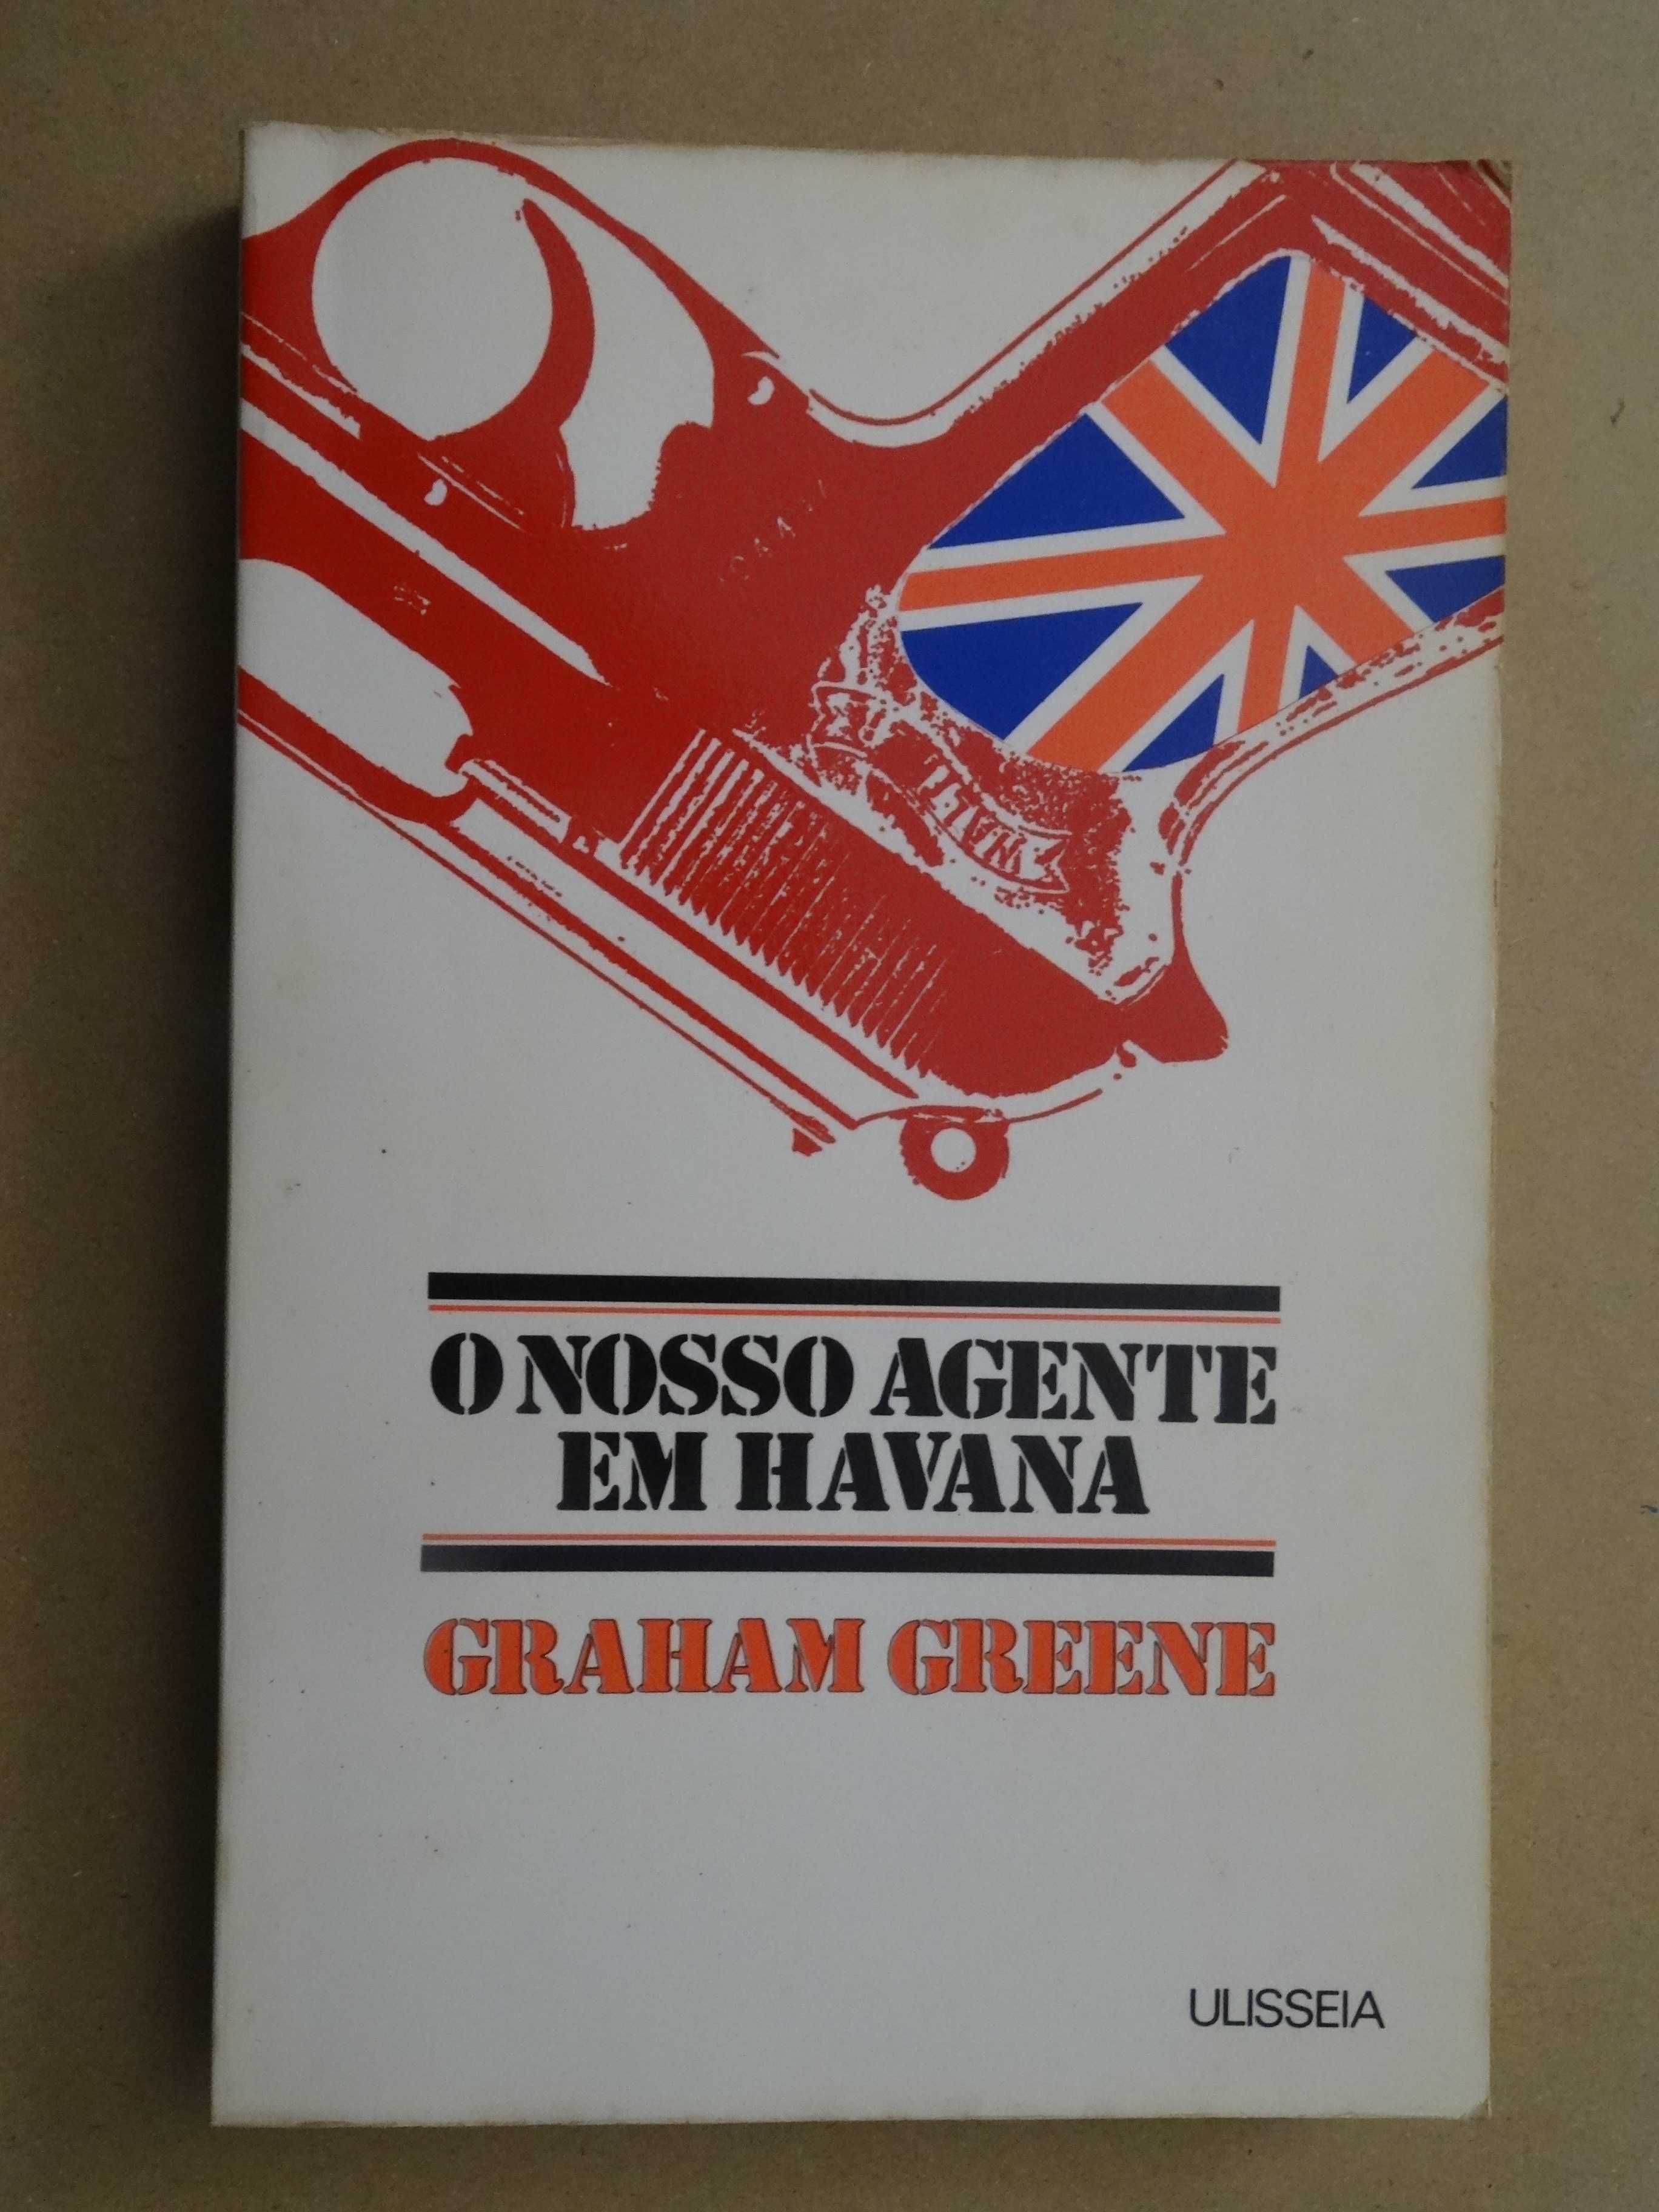 O Nosso Agente em Havana de Graham Greene